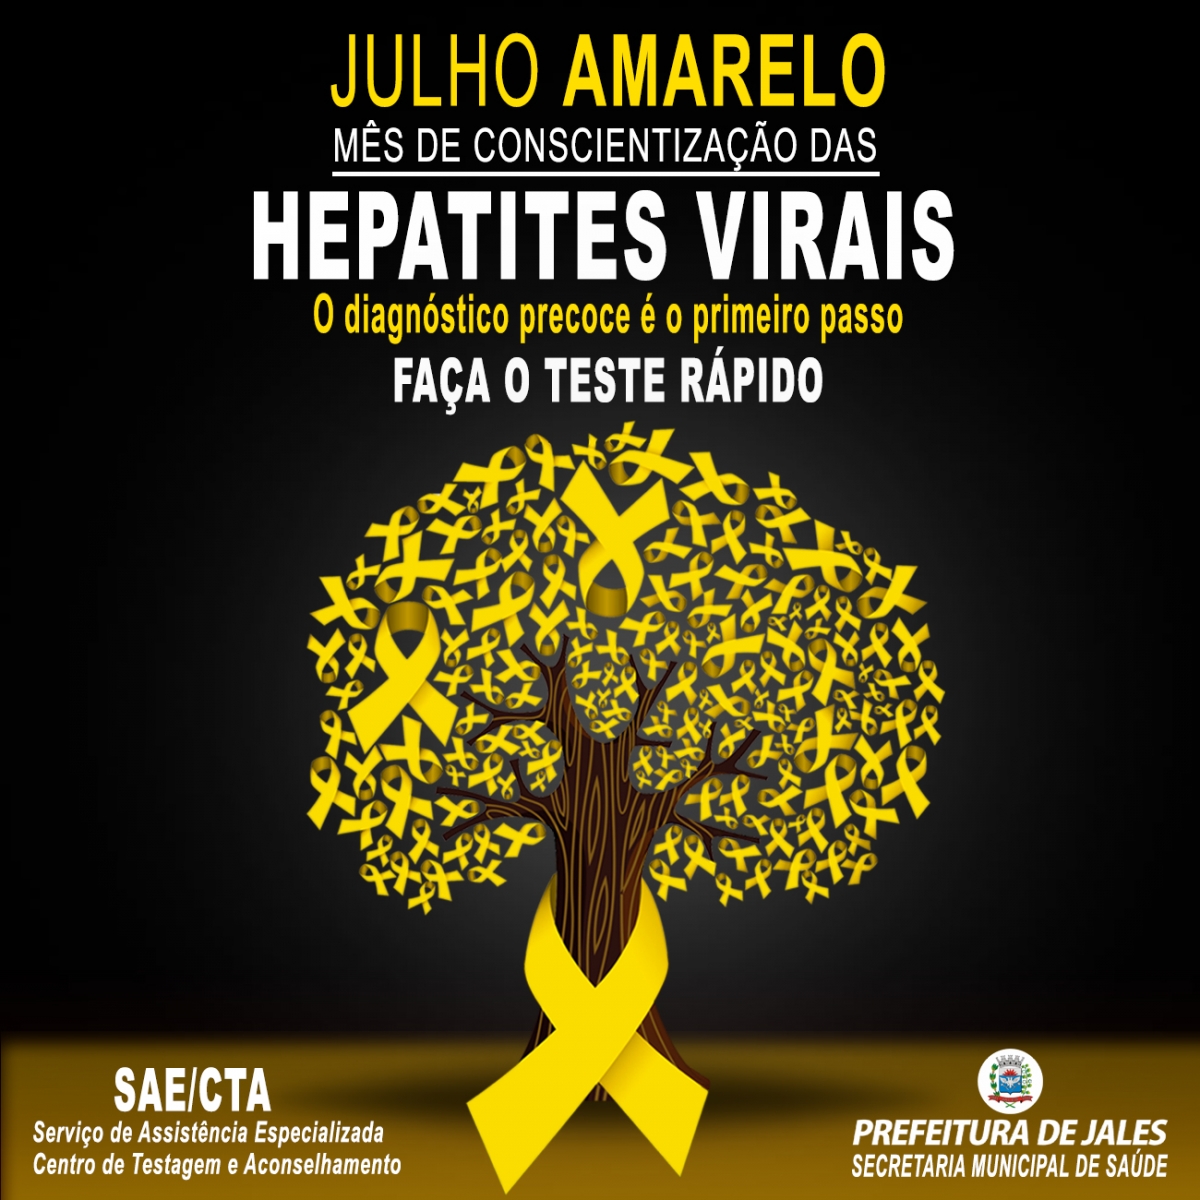 Julho Amarelo é realizado pelo SAE/CTA mesmo em tempo de pandemia